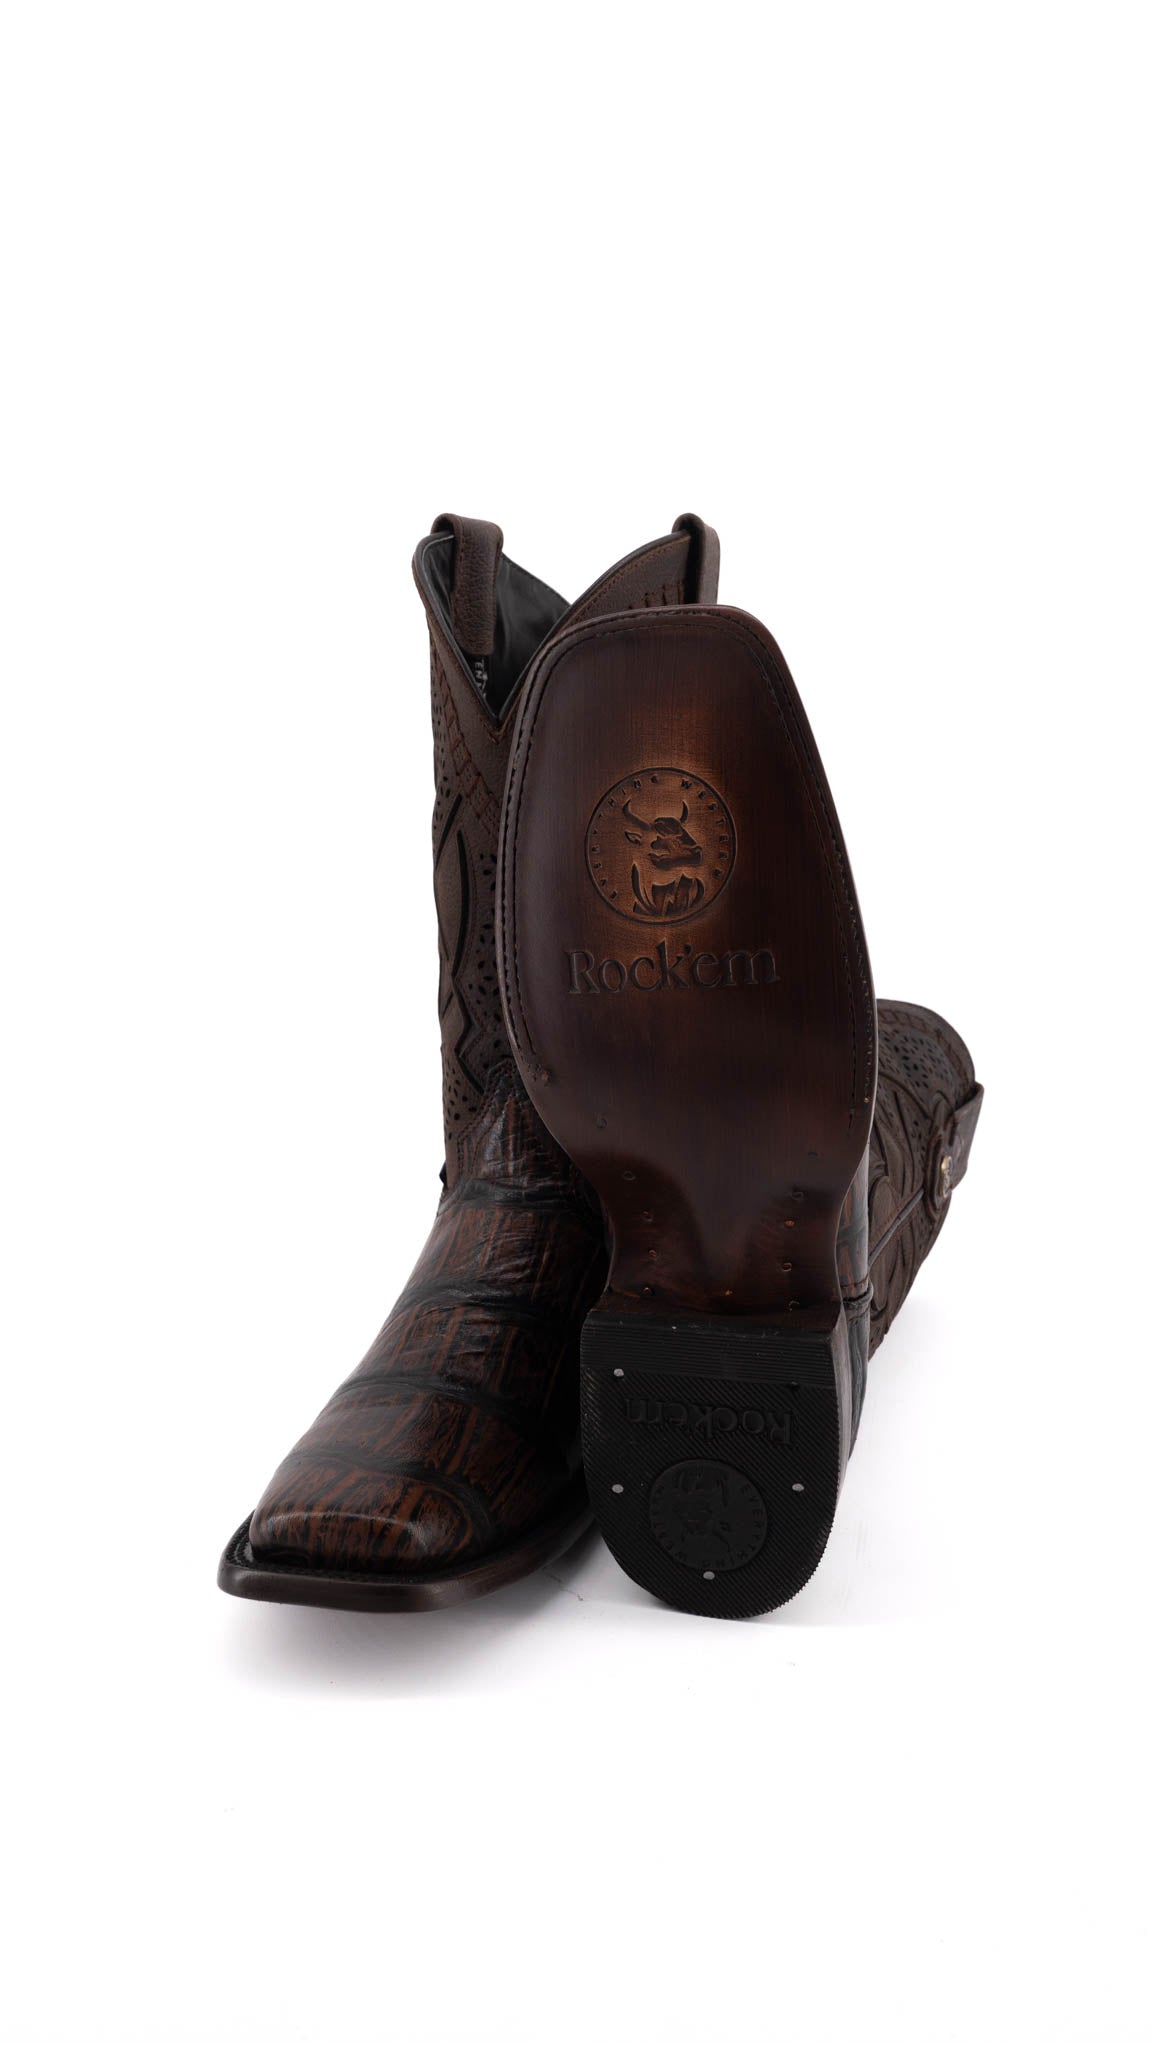 Coco Amazonico Rodeo Toe Cowboy Boot